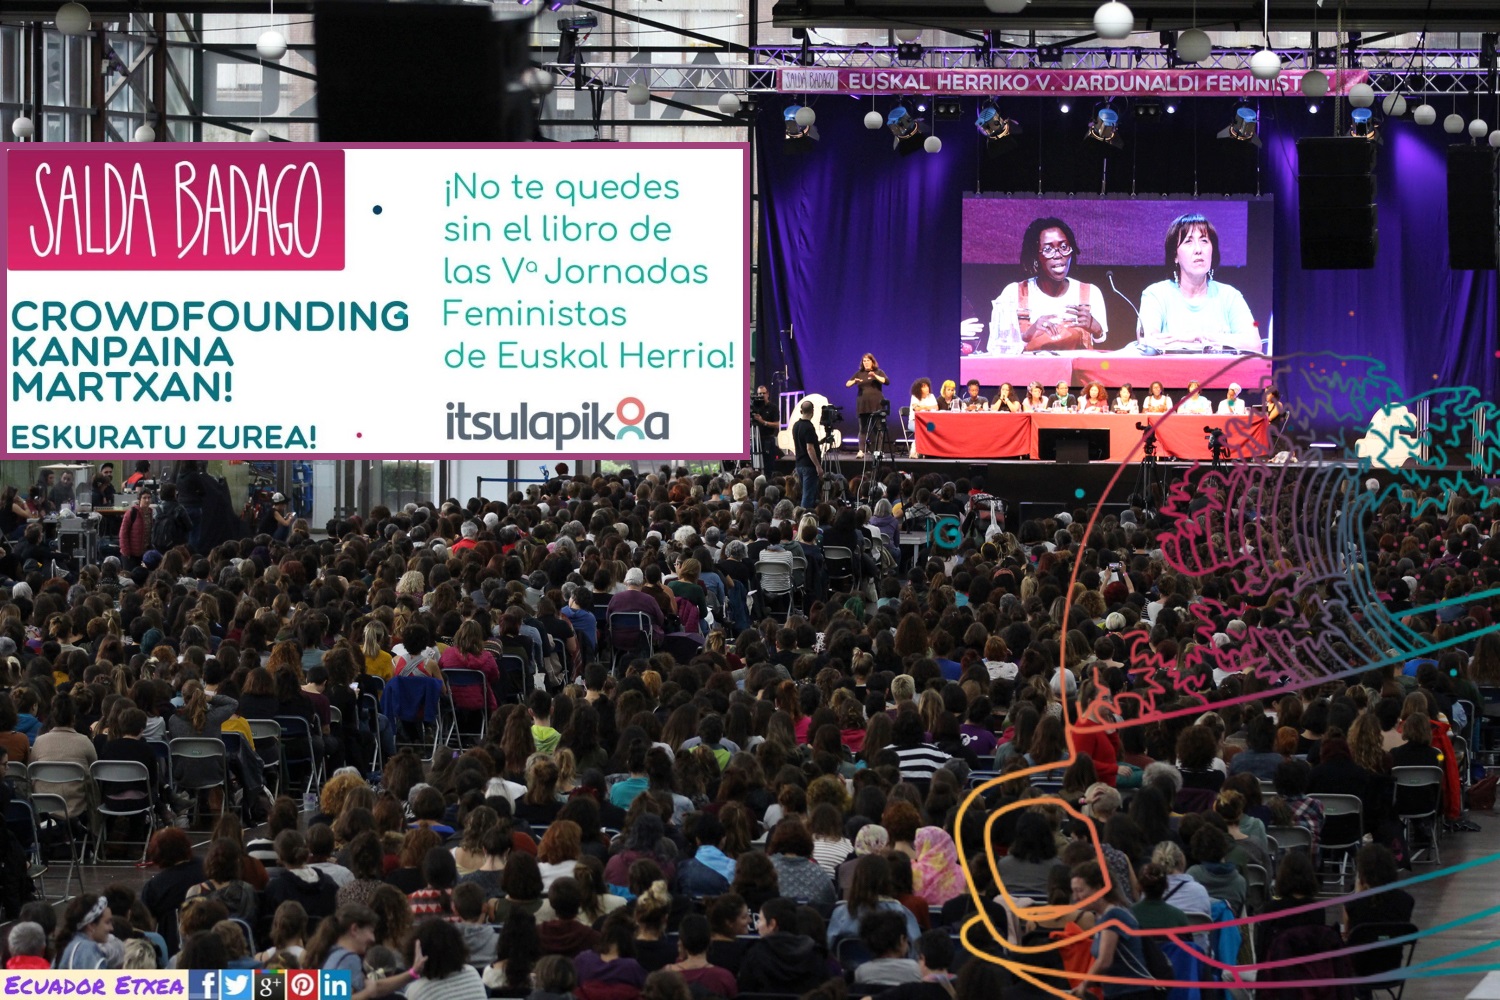 quintas-jornadas-feministas-euskalherria-durango-2019-saldabadago-vasco-libro-croudfunding